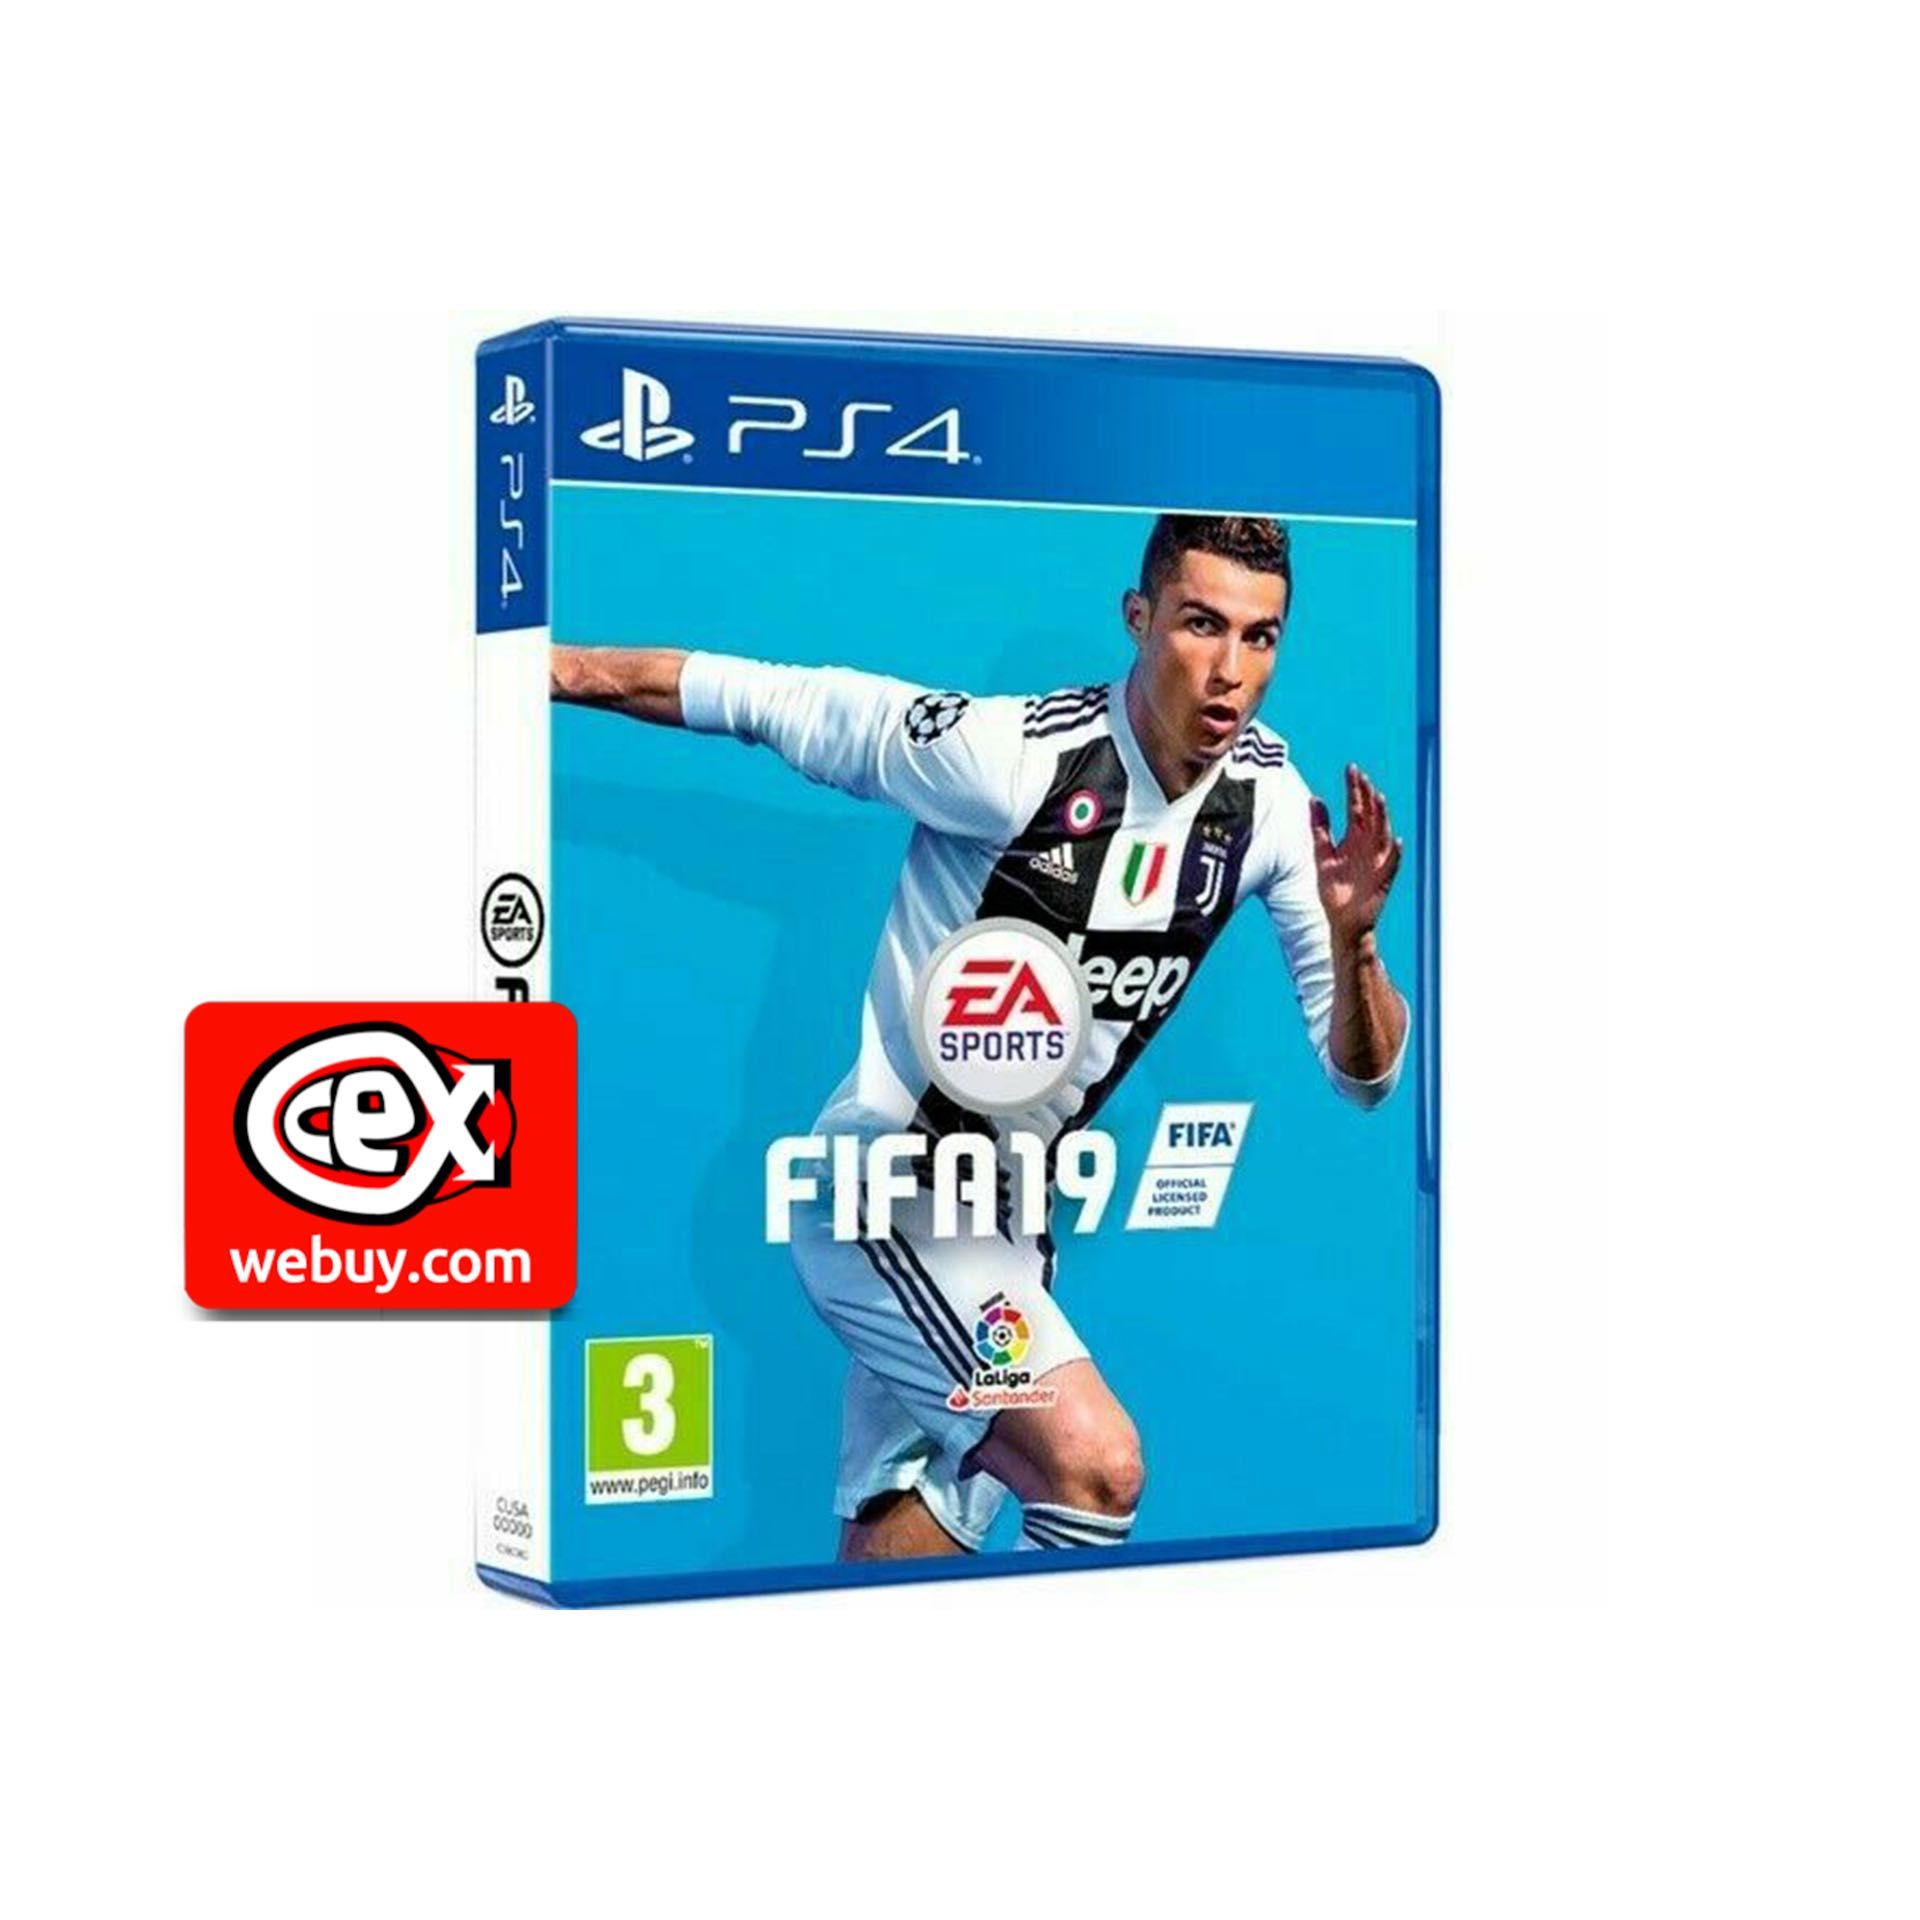 FIFA 19 PlayStation 4 (CeX Gdynia)